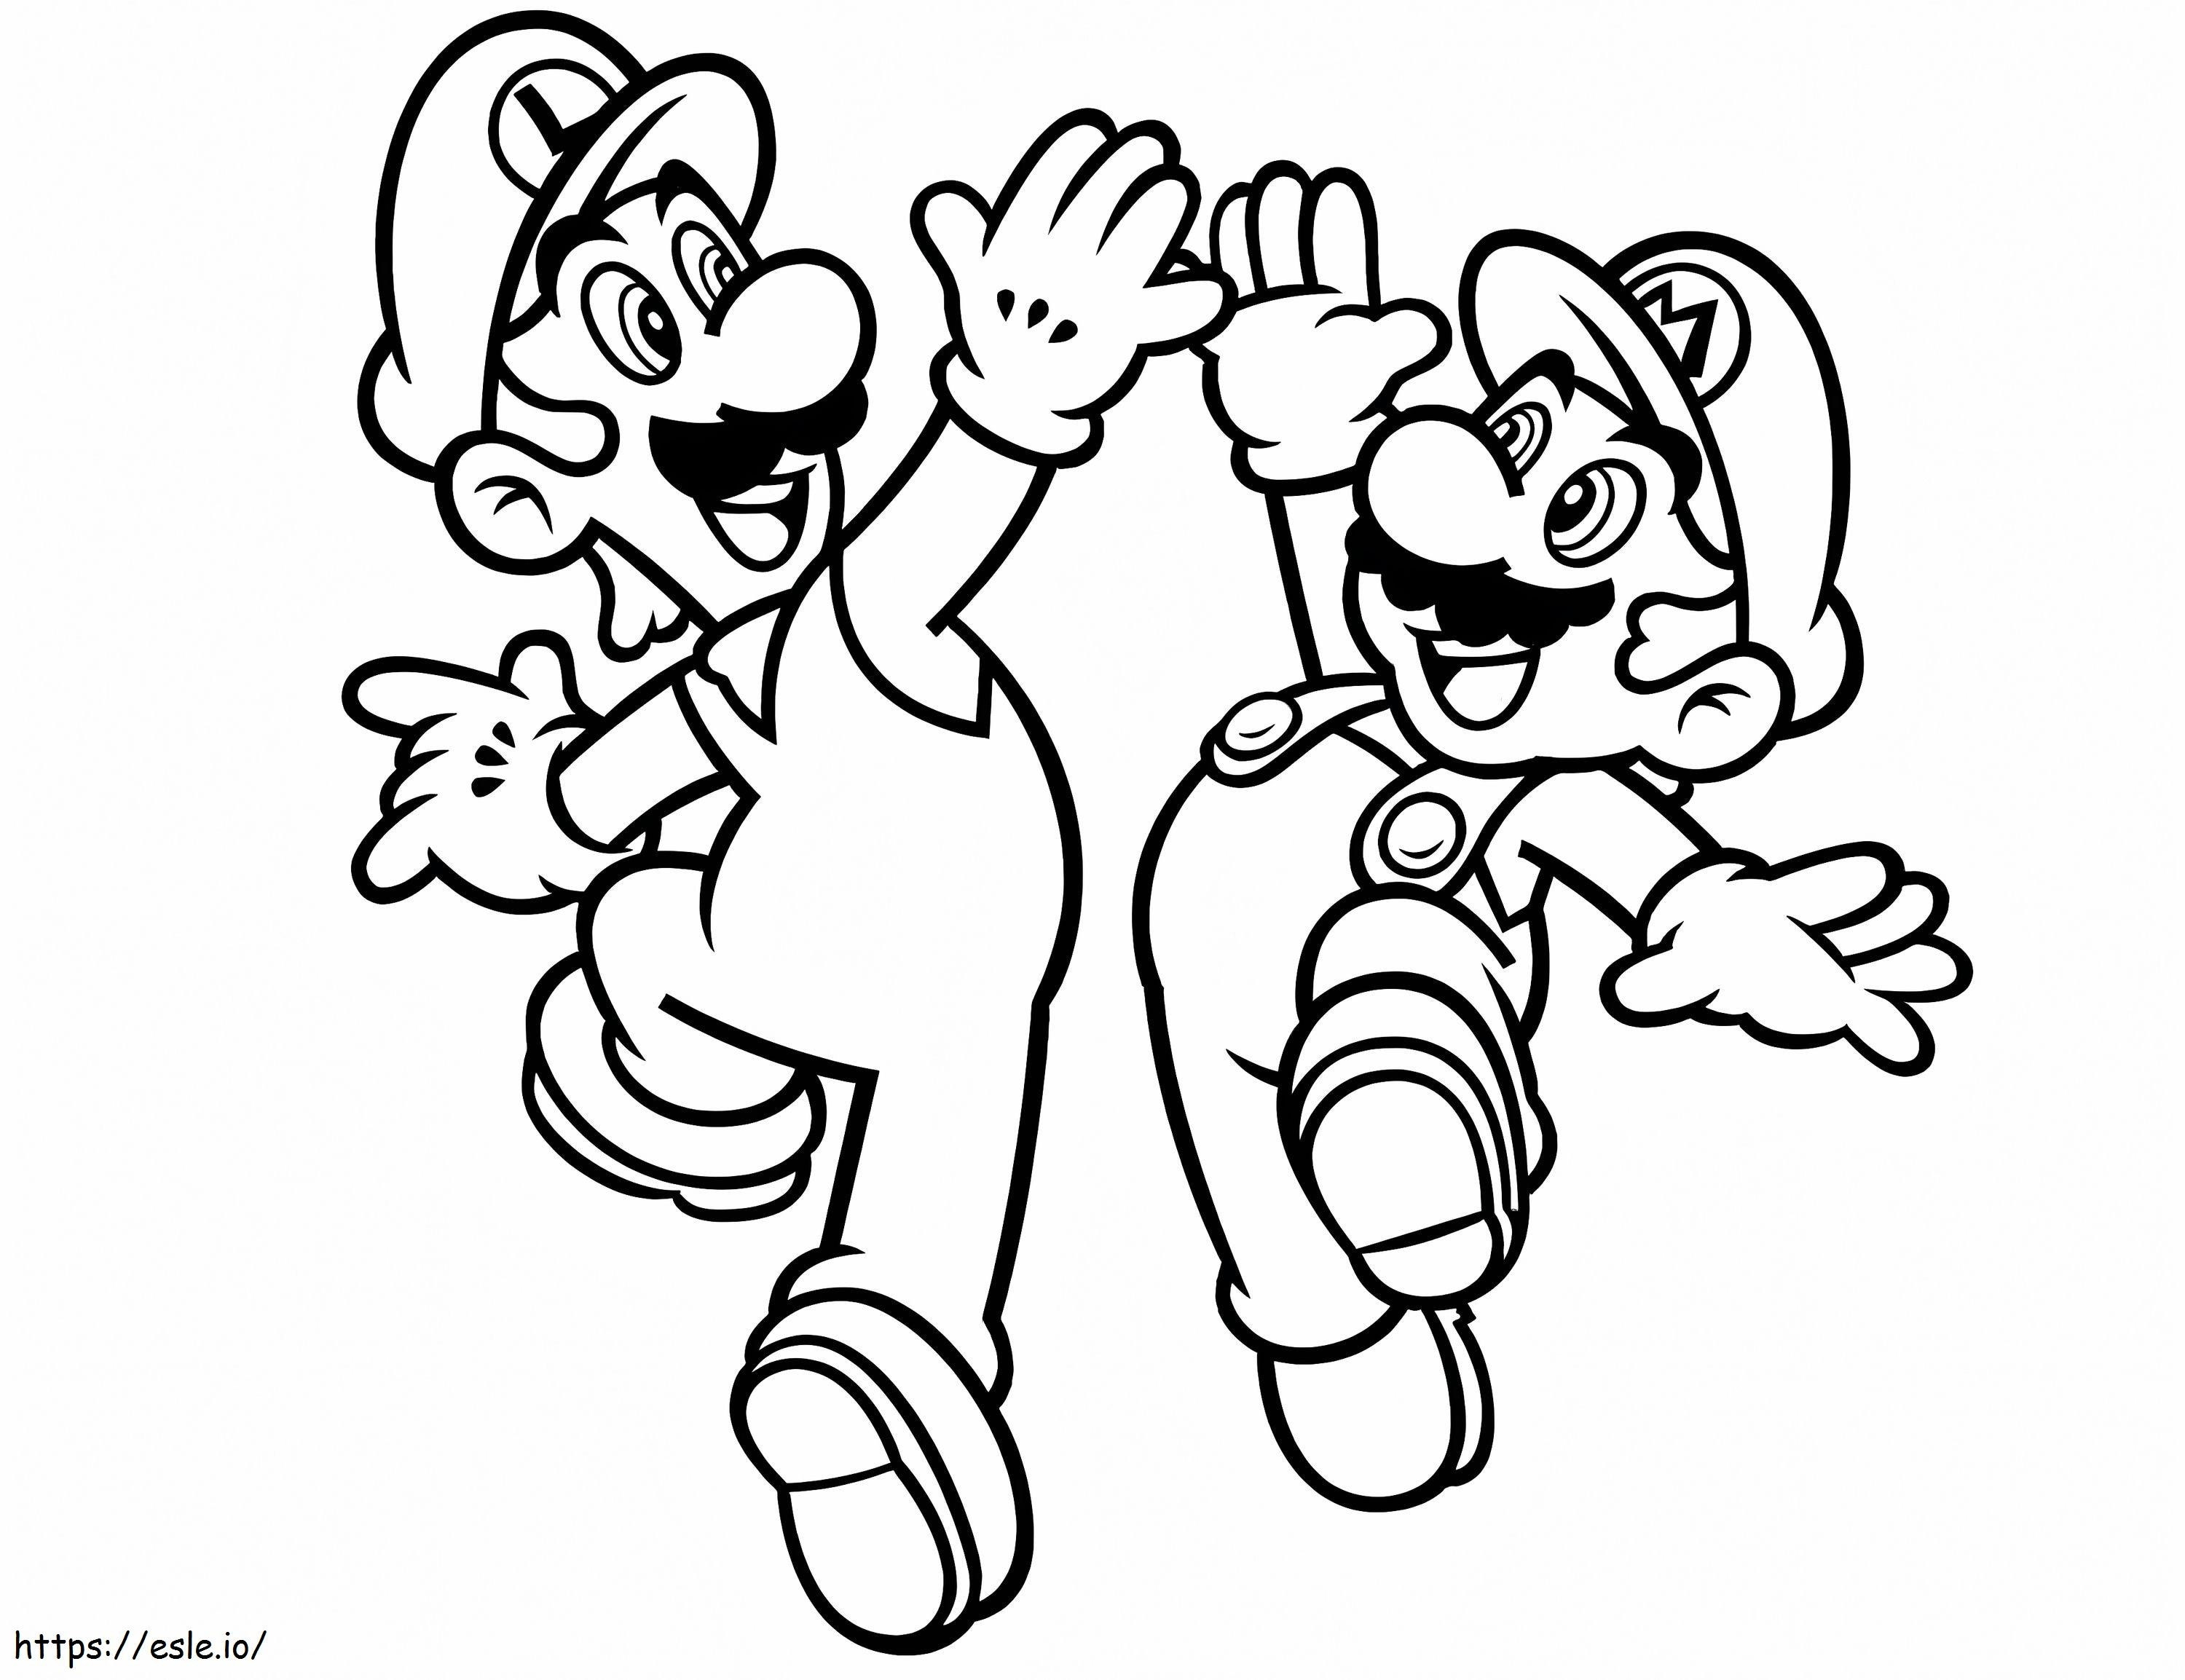 Buon Luigi e Mario da colorare